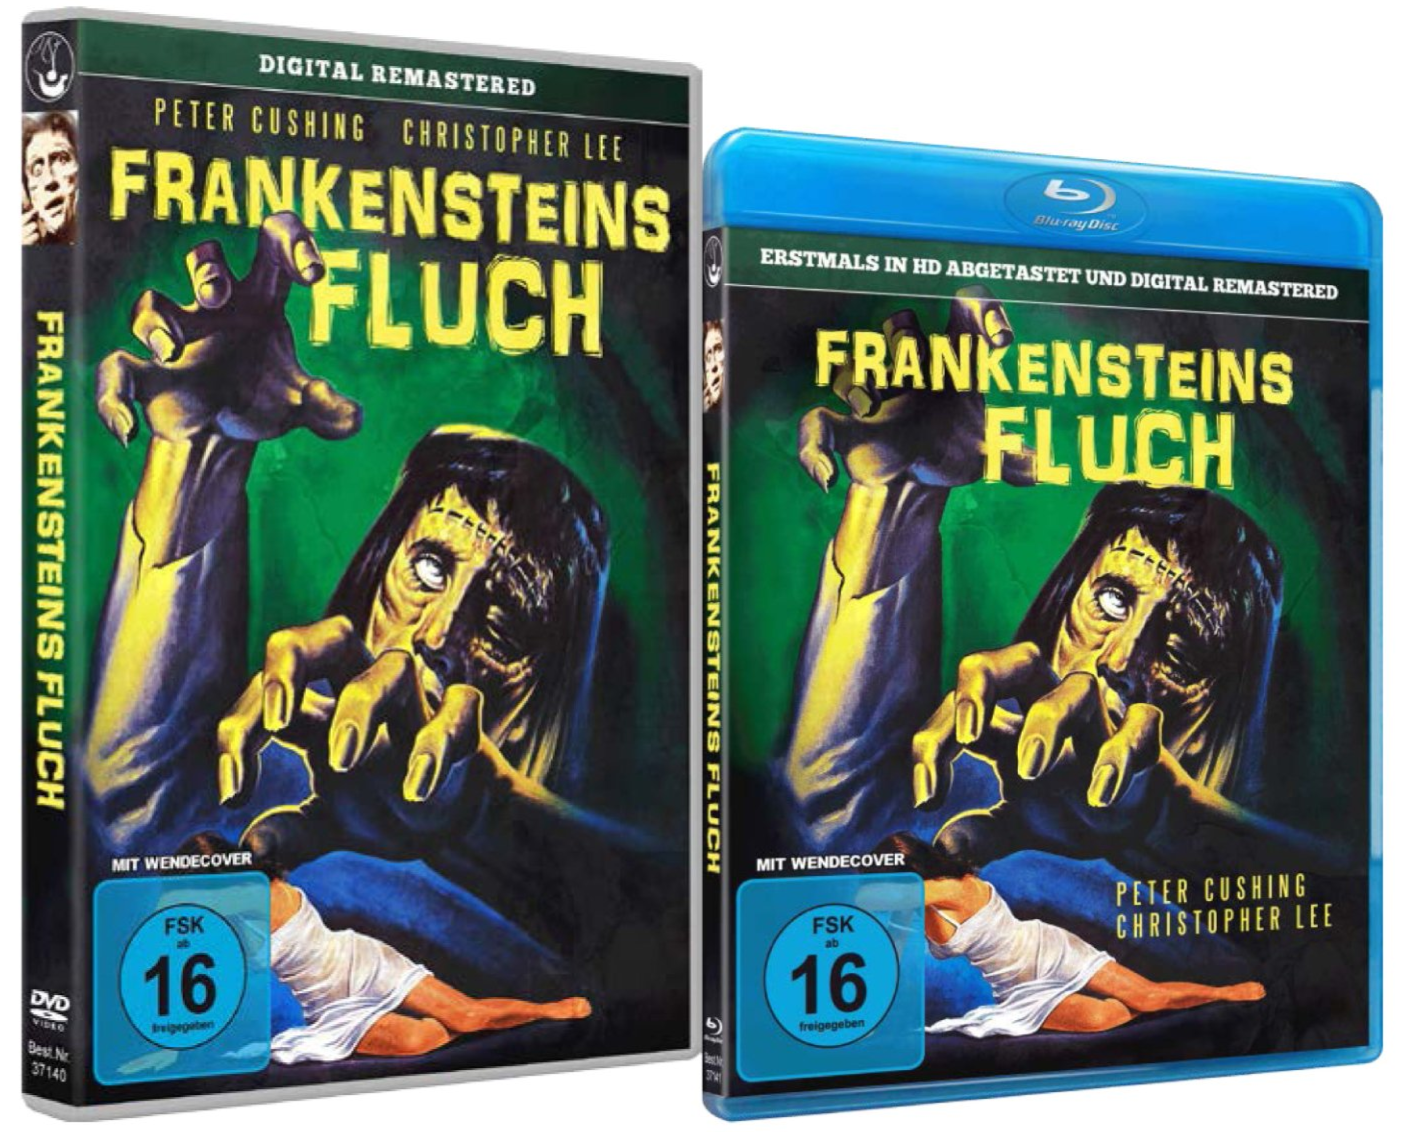 DVD, Blu ray Frankensteins Fluch